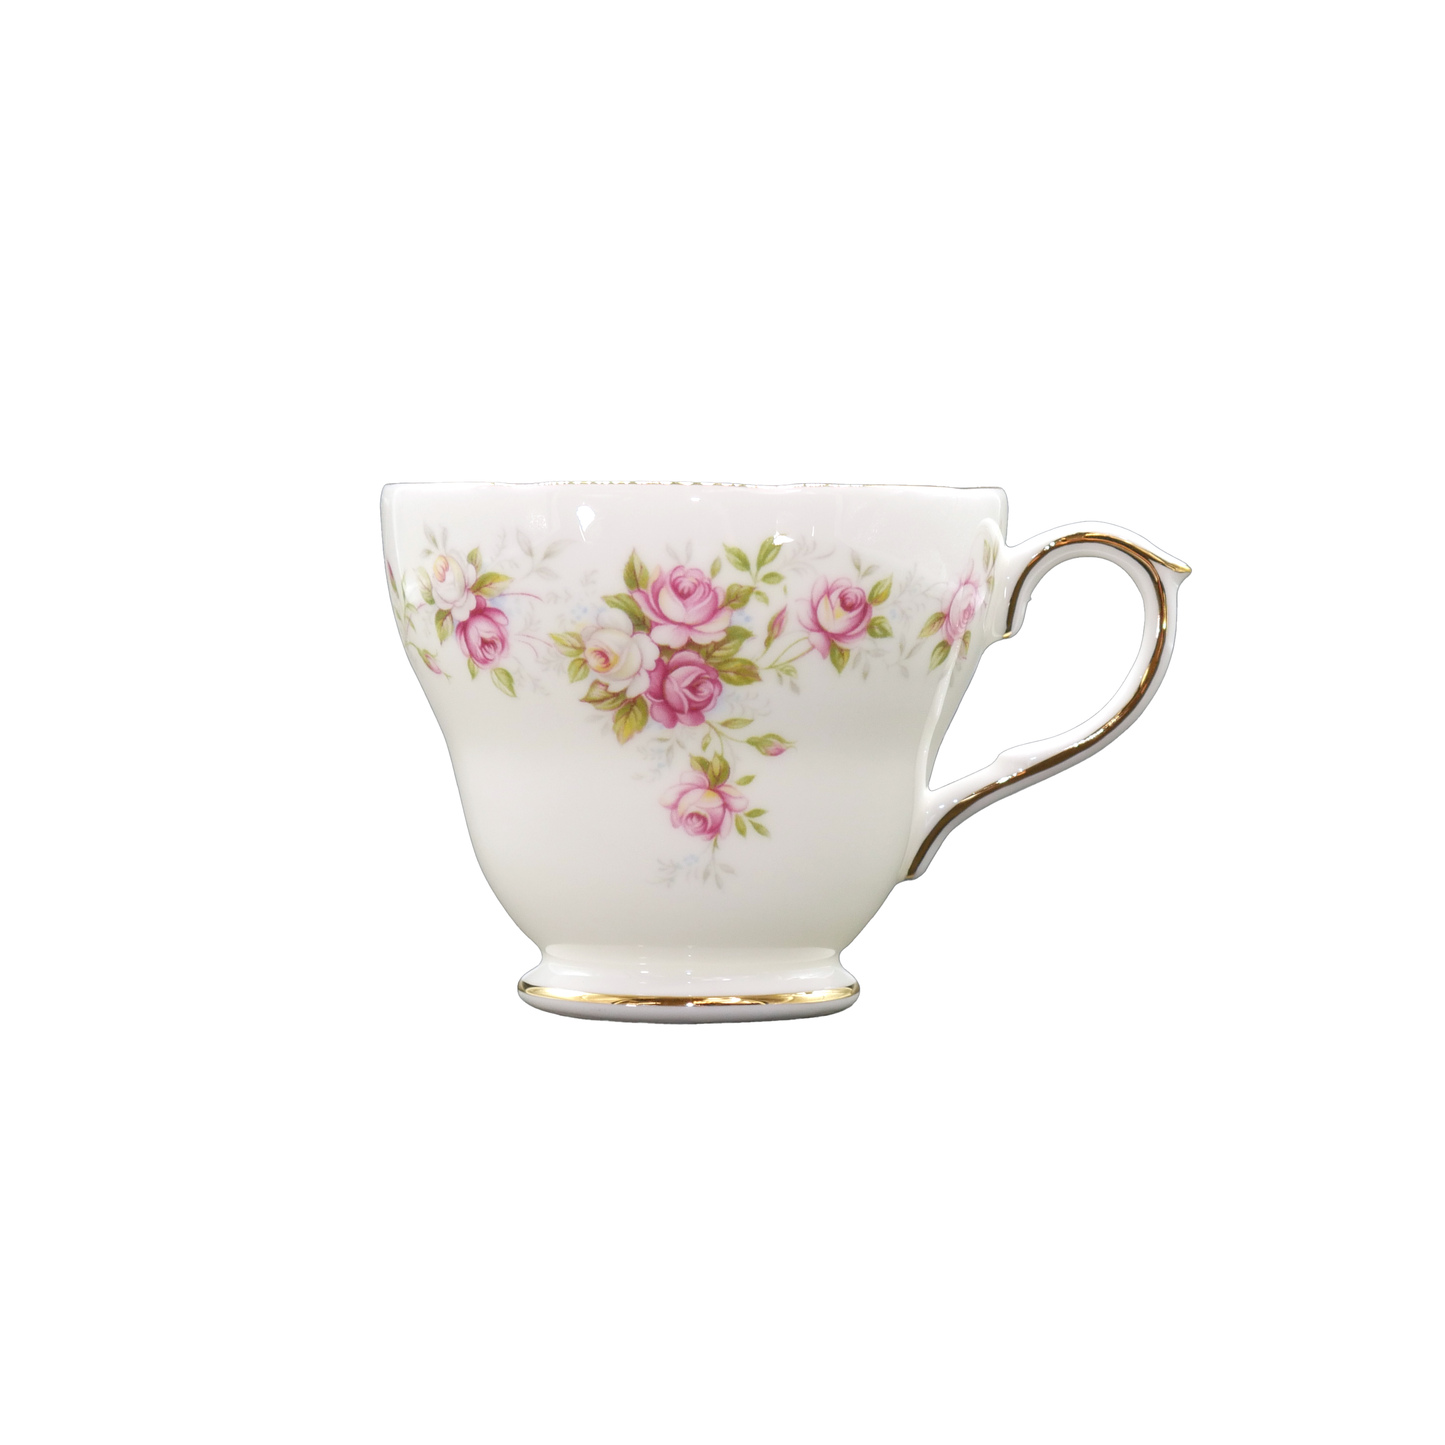 Duchess China June Bouquet Tea Cup